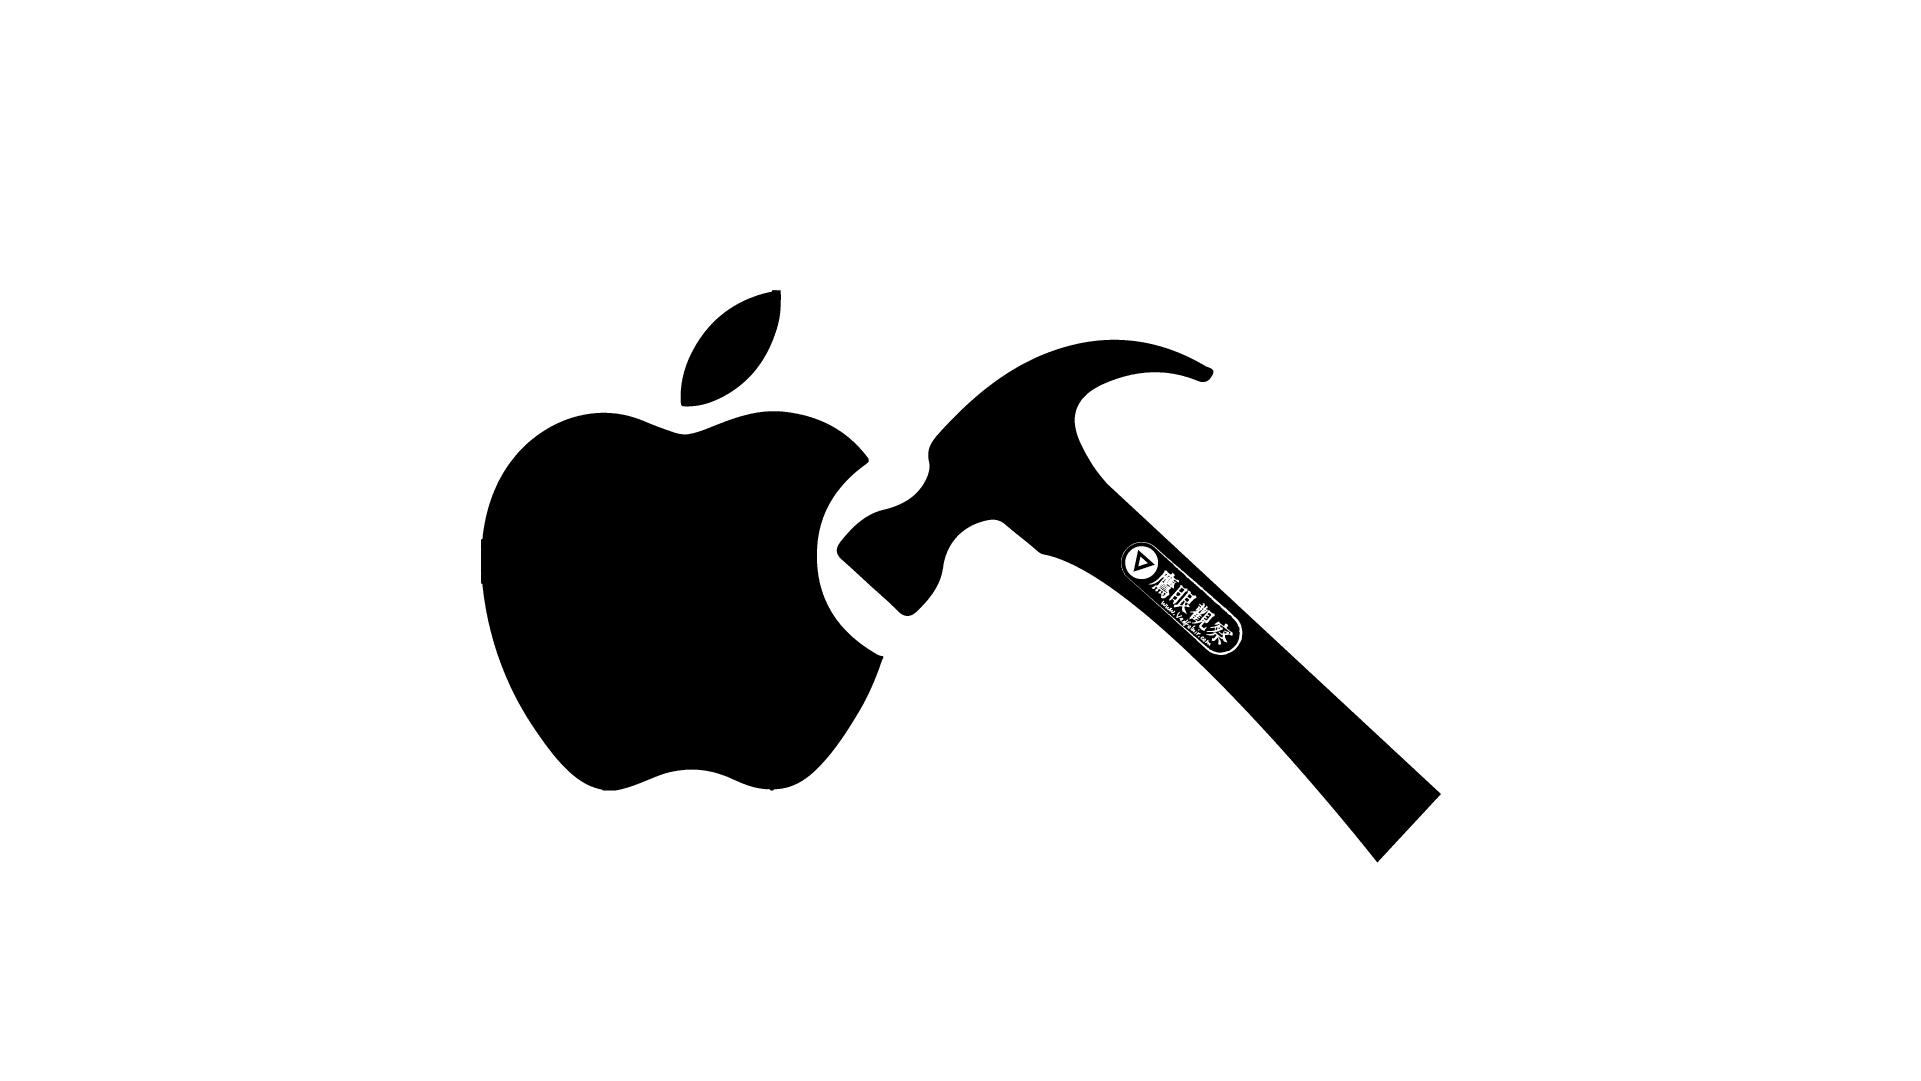 蘋果 Apple 將免費維修 2018 MacBook Air 的邏輯電路板故障問題